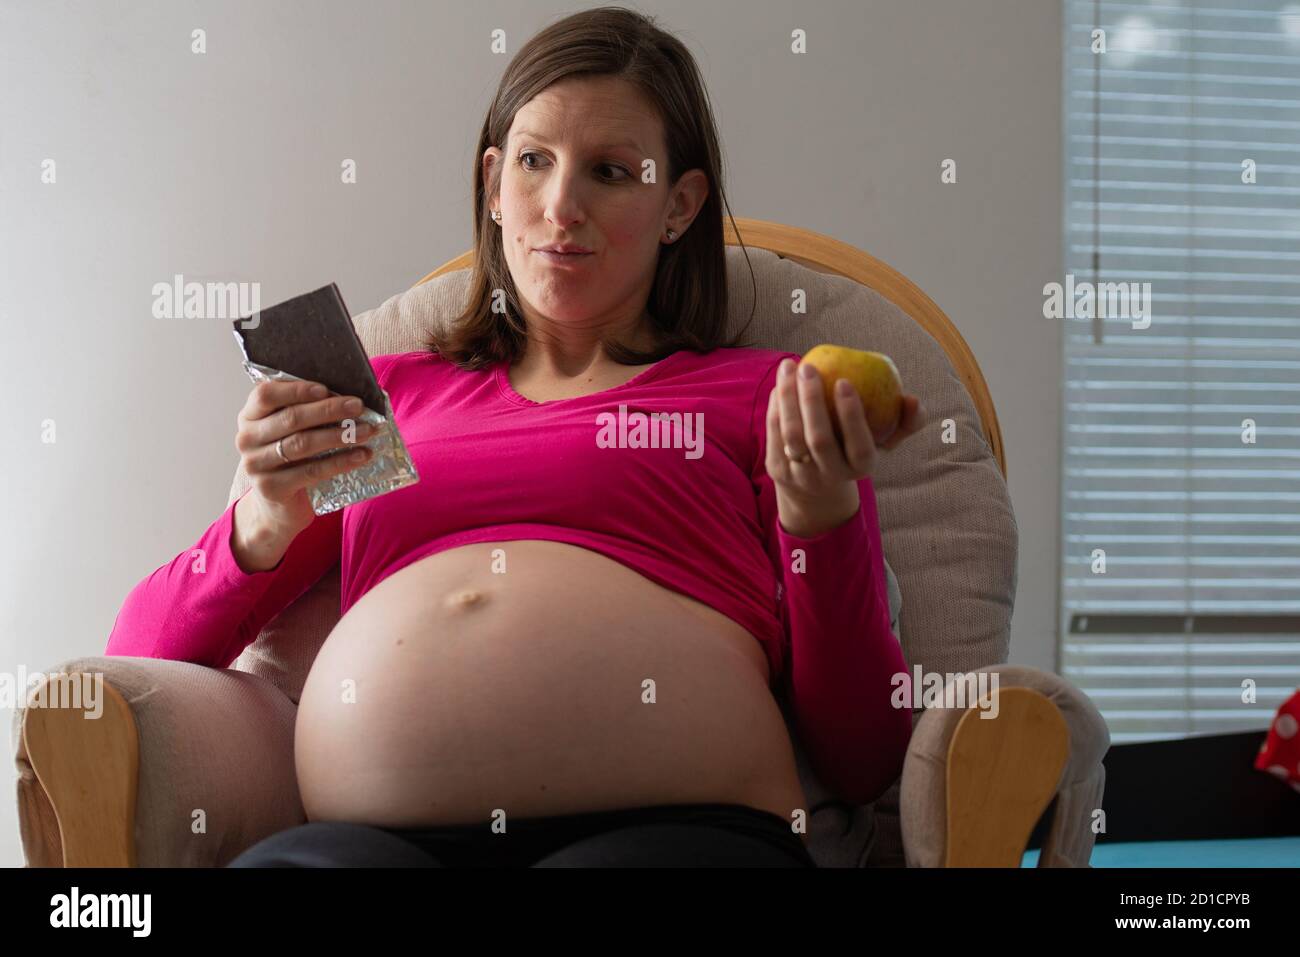 Jeune femme enceinte avec un gros ventre gonflé décidant entre un ...